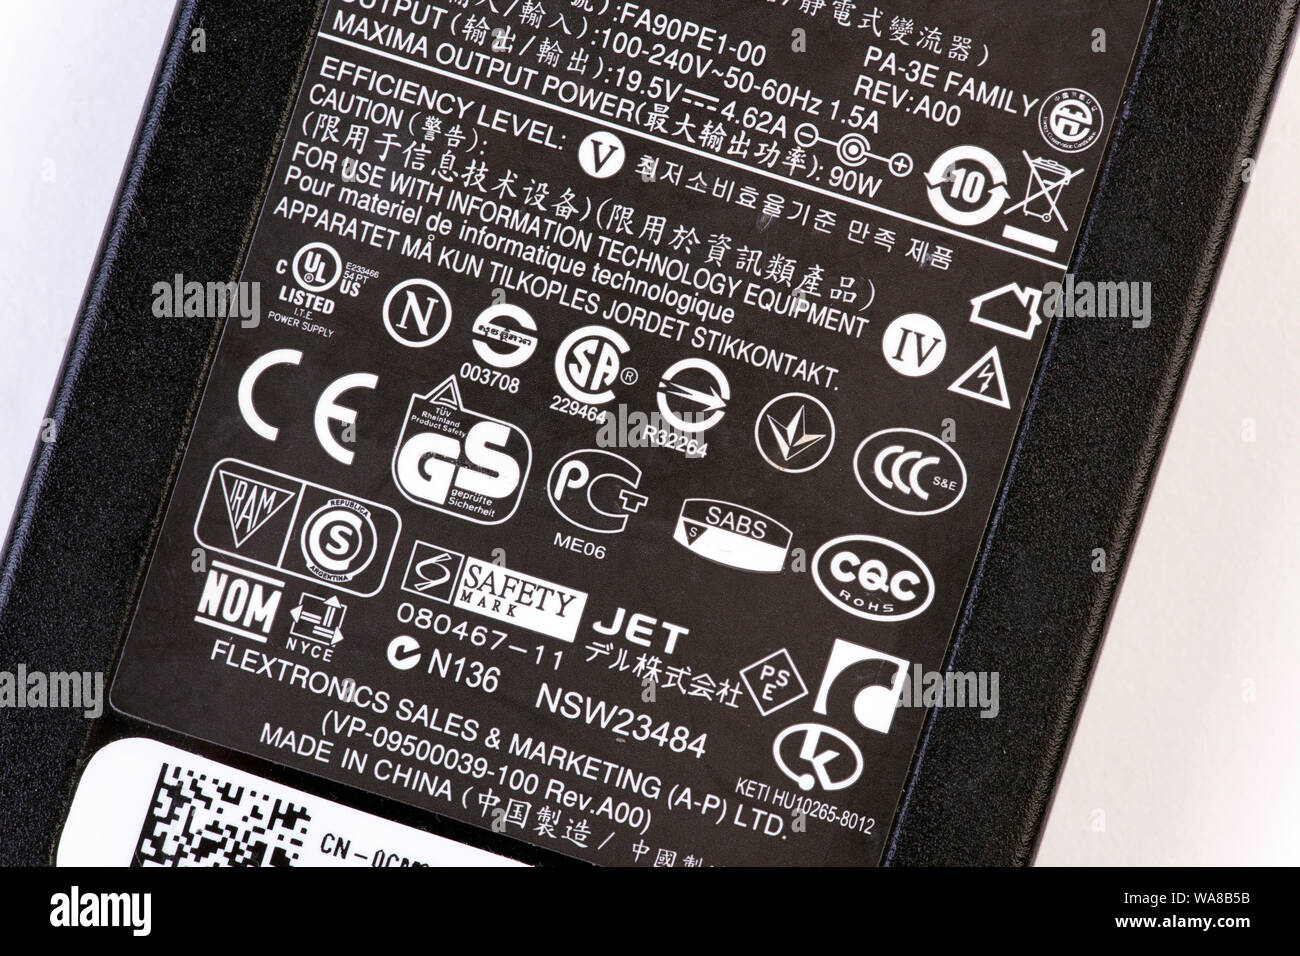 Standard di sicurezza elettrica del logo sul laptop adattatore per presa elettrica Foto Stock